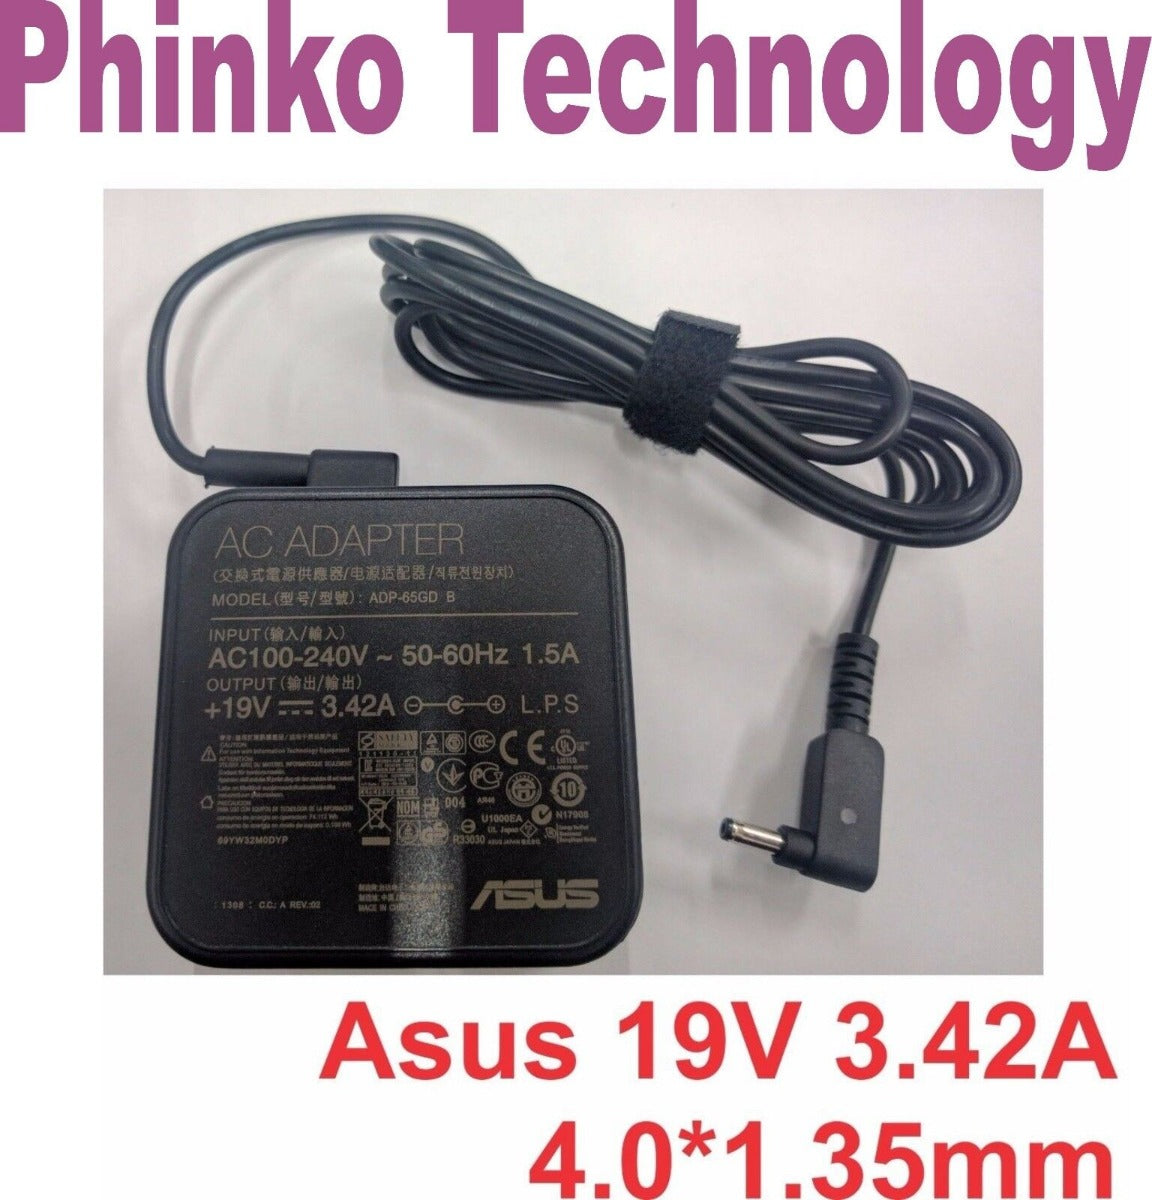 19V 3.42A 65W ASUS Vivobook S14 S410u S410ua S410un AC Adapter Charger